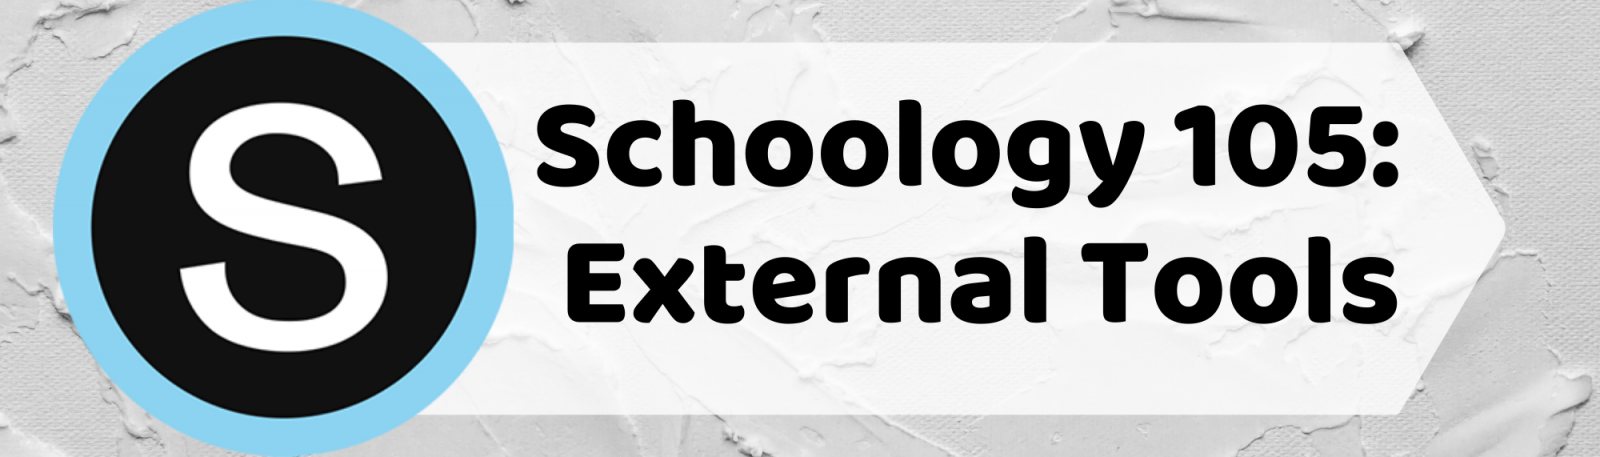 Schoology 105 | External Tools